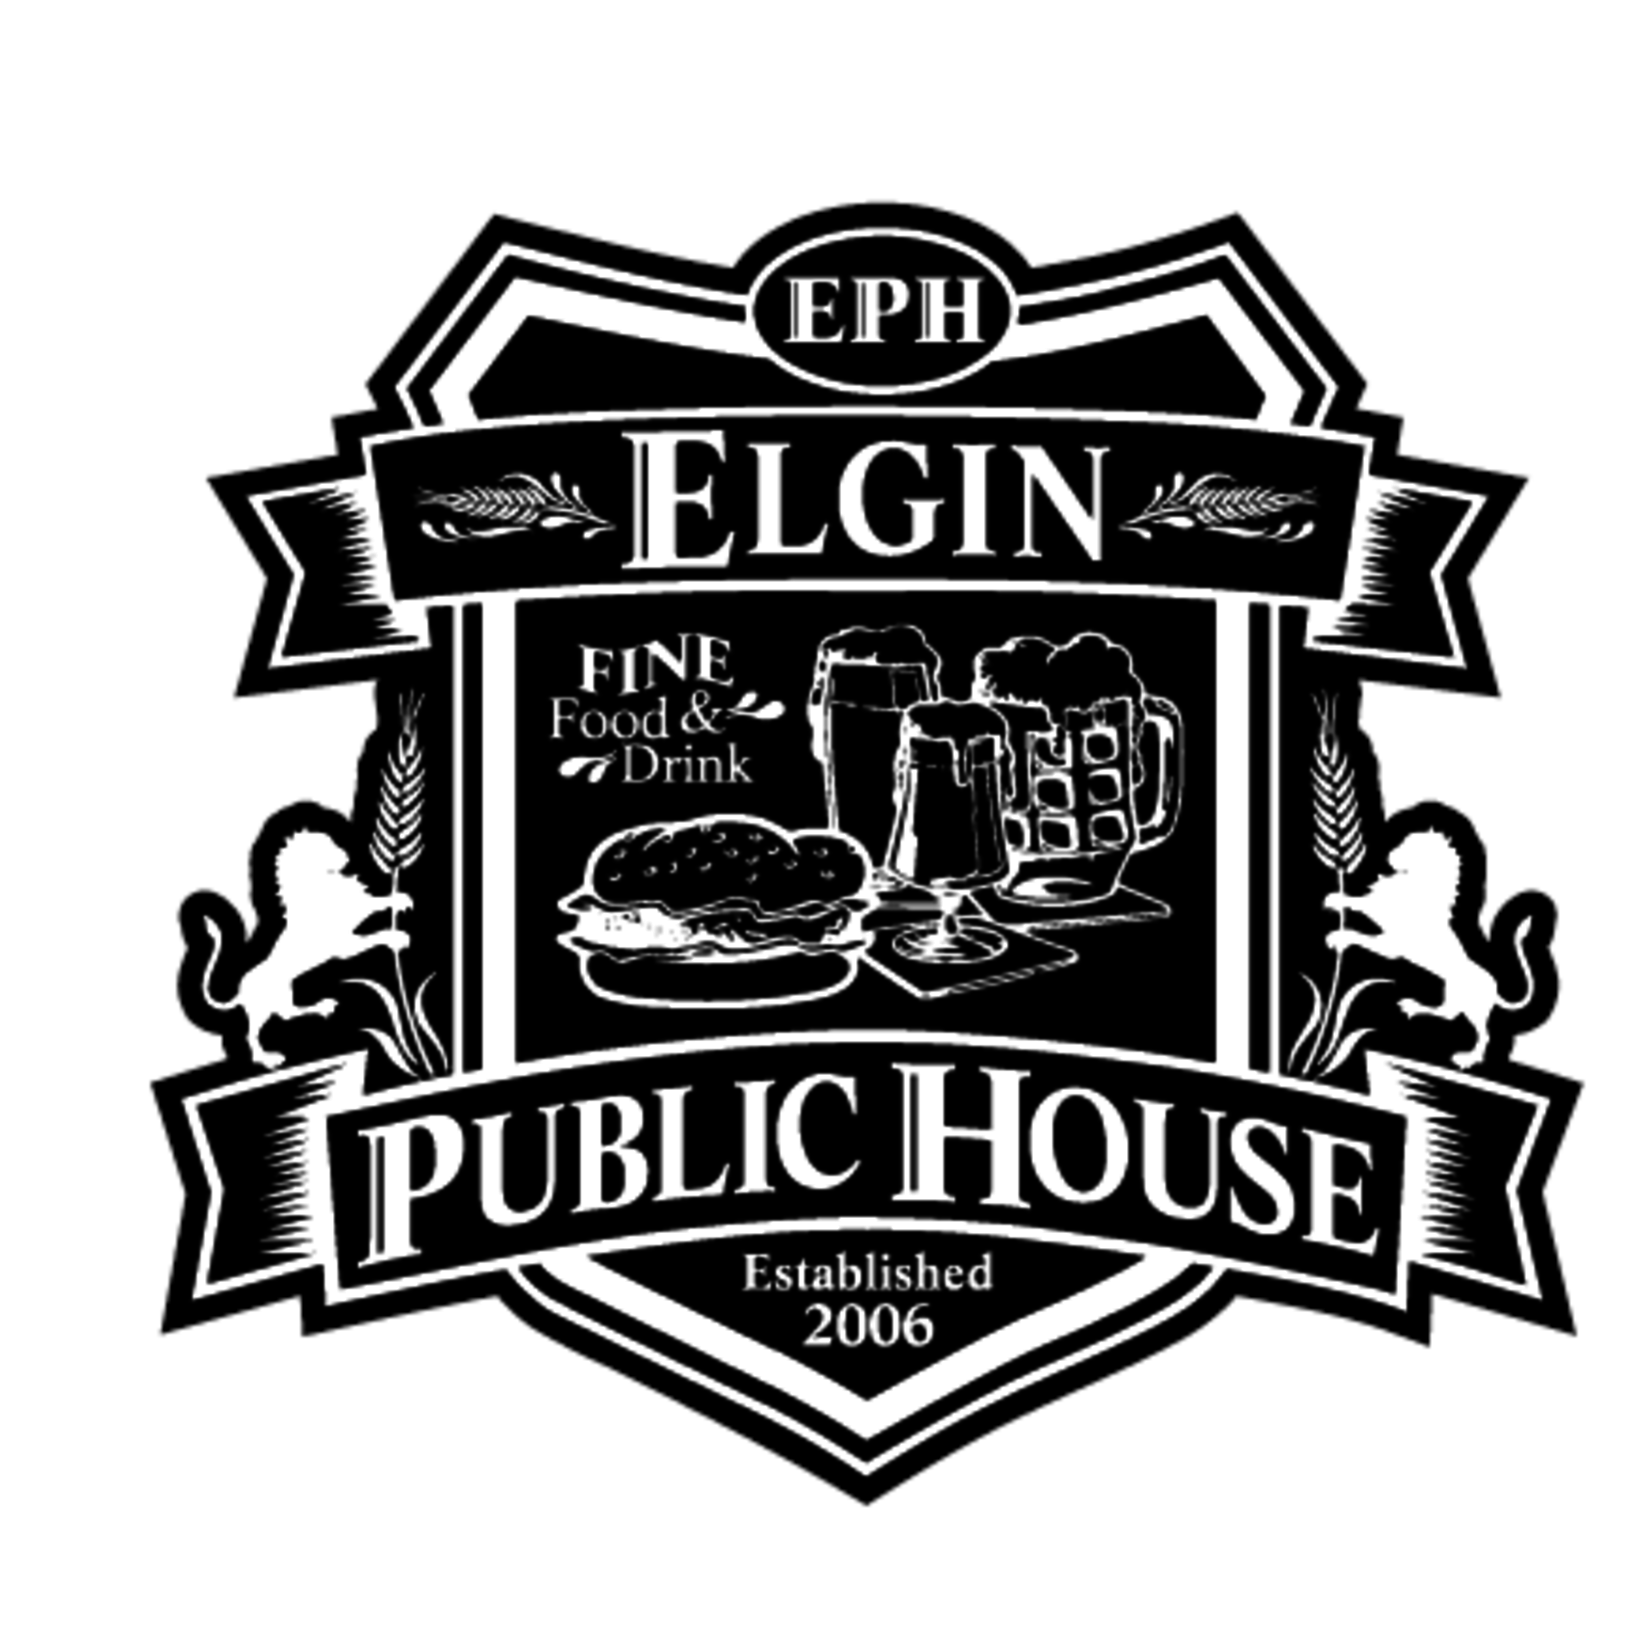 Elgin Public House-Elgin Elgin Public House-Elgin  - $25 Dining Certificate PREMIUM